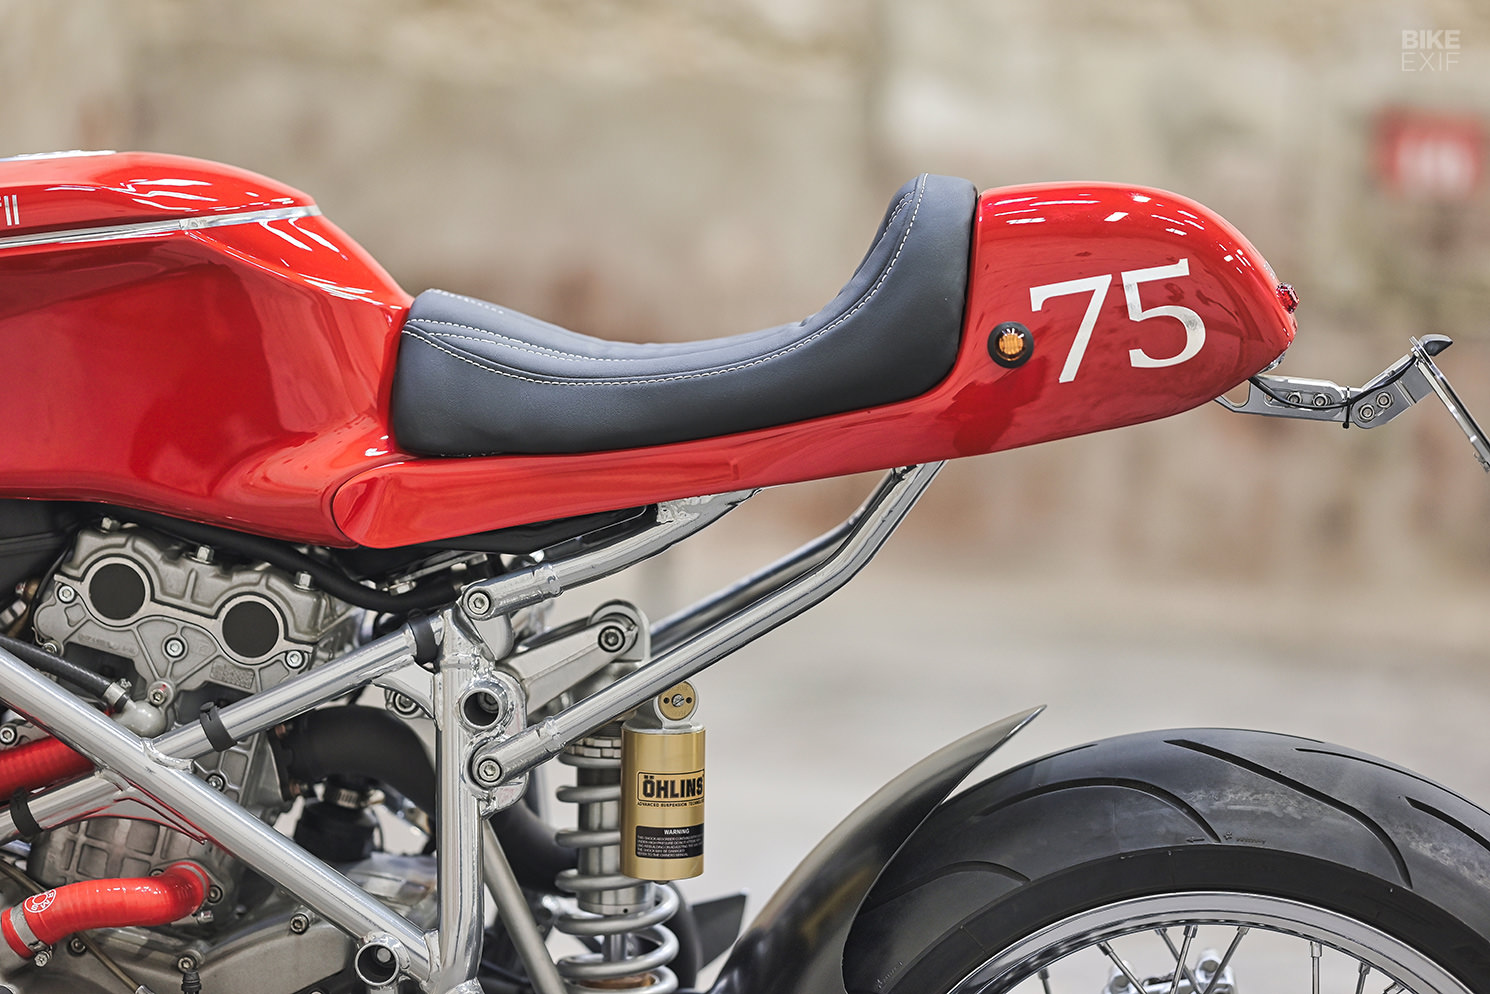 Ducati 749S café racer by Jerem Motorcycles